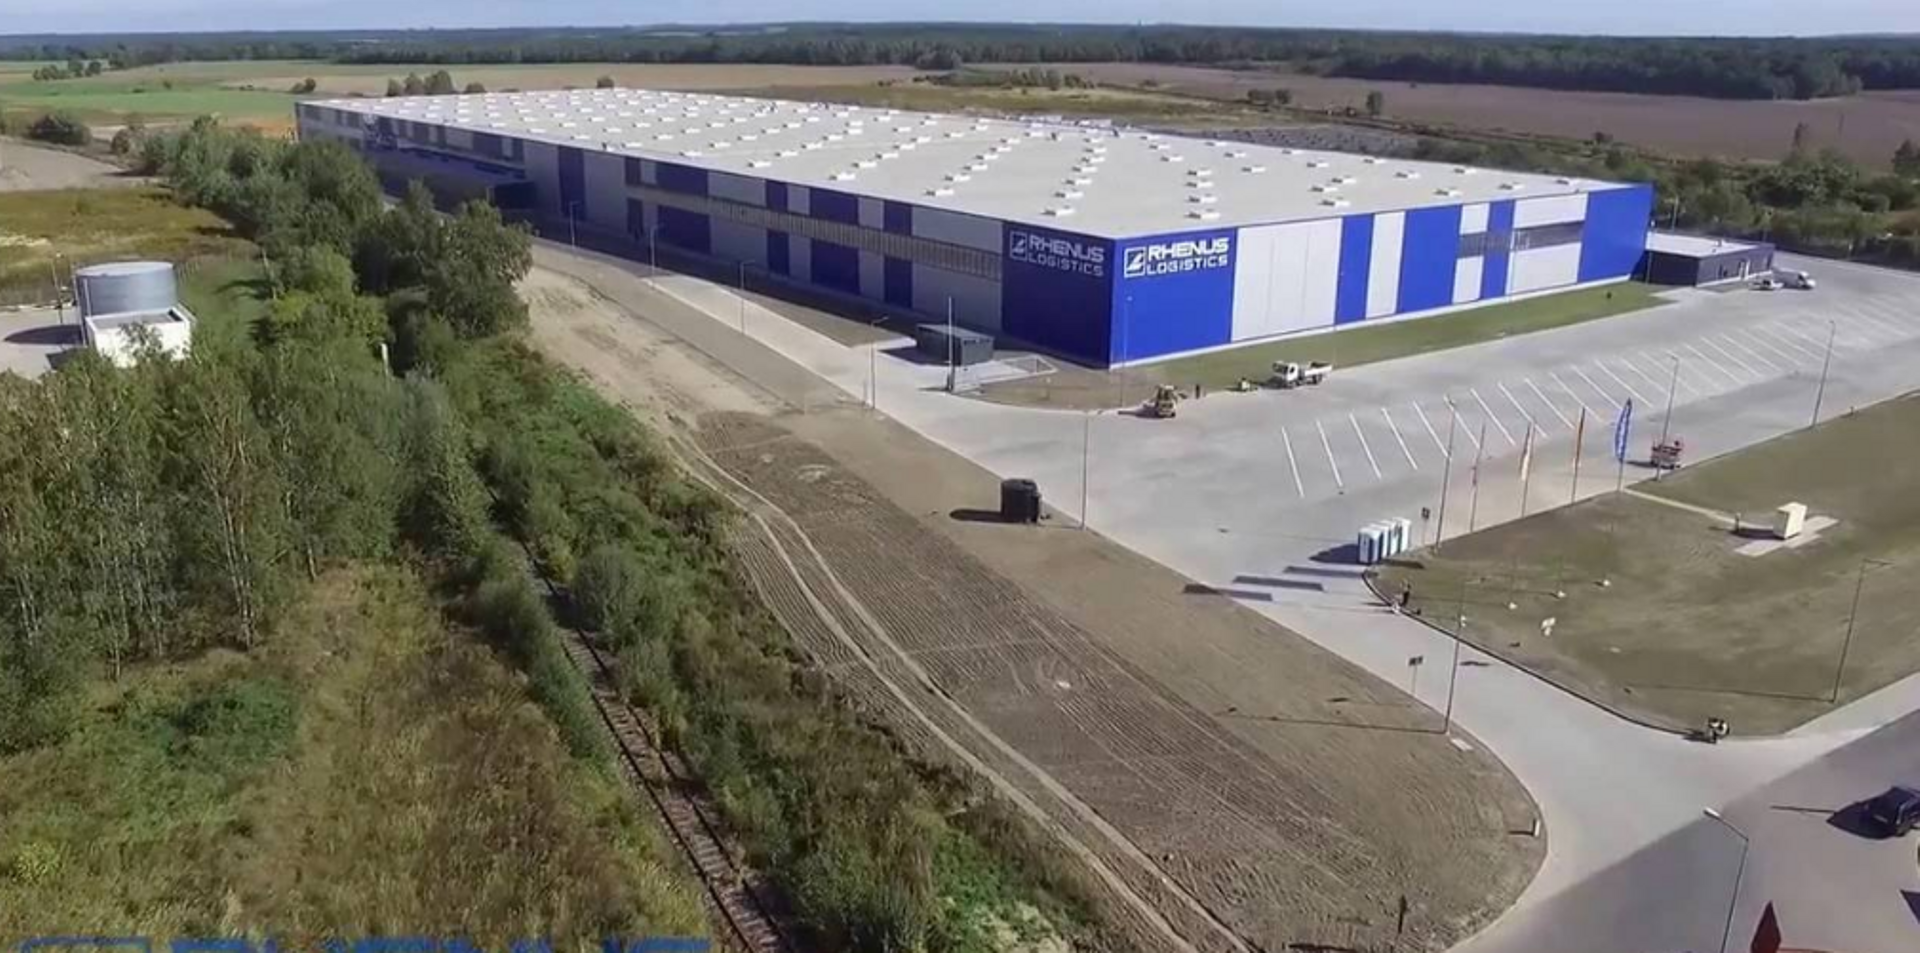  Rhenus Logistics otworzył nowe centrum logistyczno-magazynowe w Bolesławcu